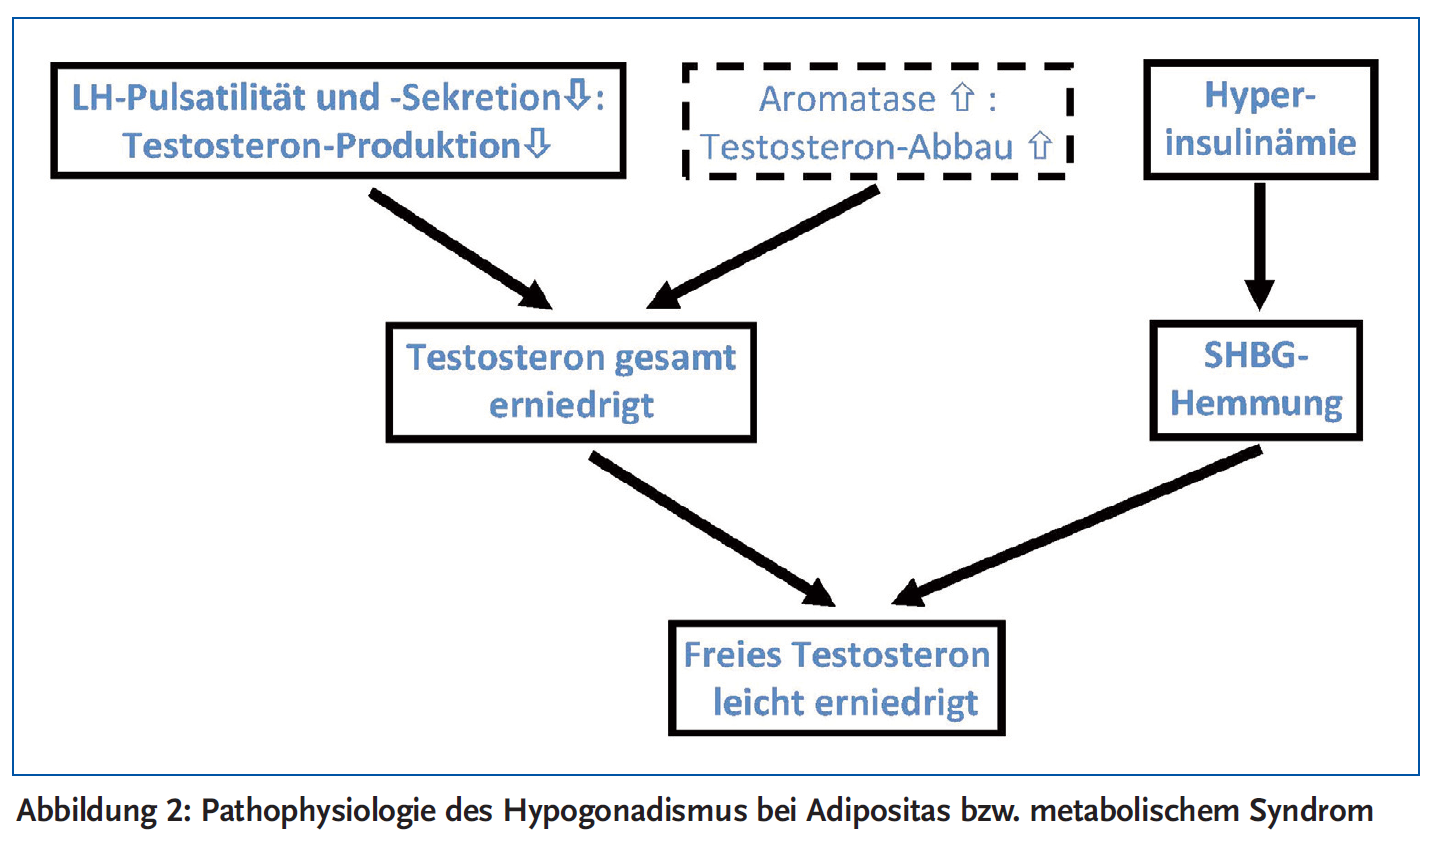 Abbildung 2: Pathophysiologie des Hypogonadismus bei Adipositas bzw. metabolischem Syndrom